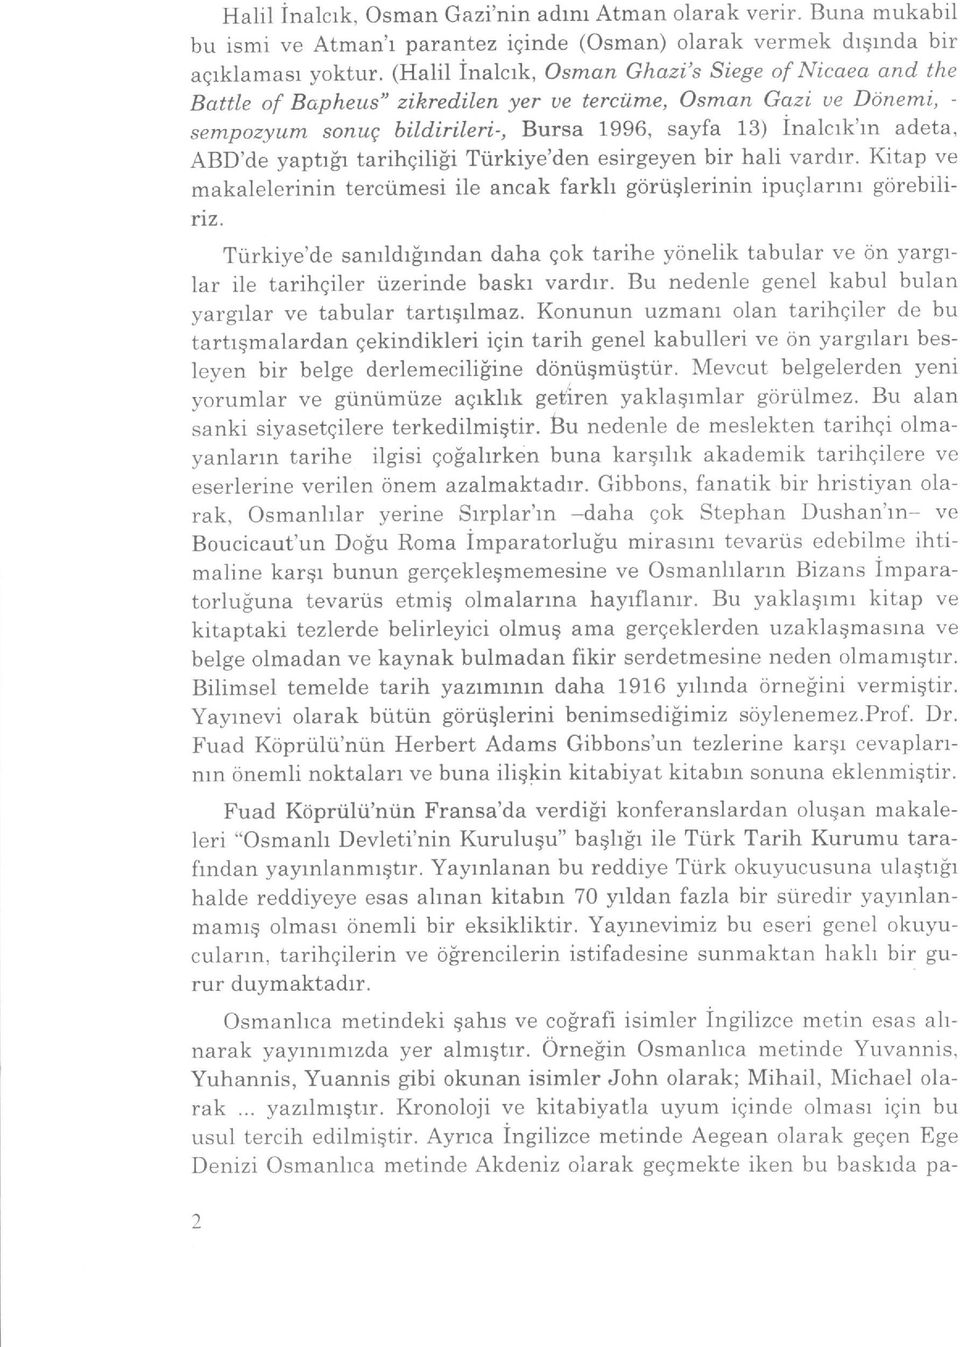 irileri-, Bursa 1996, sayfa 13) inalcrk'rn adeta, ABD'de yaptrir tarihqiliii Ti.irkiye'den esirgeyen bir hali vardrr.